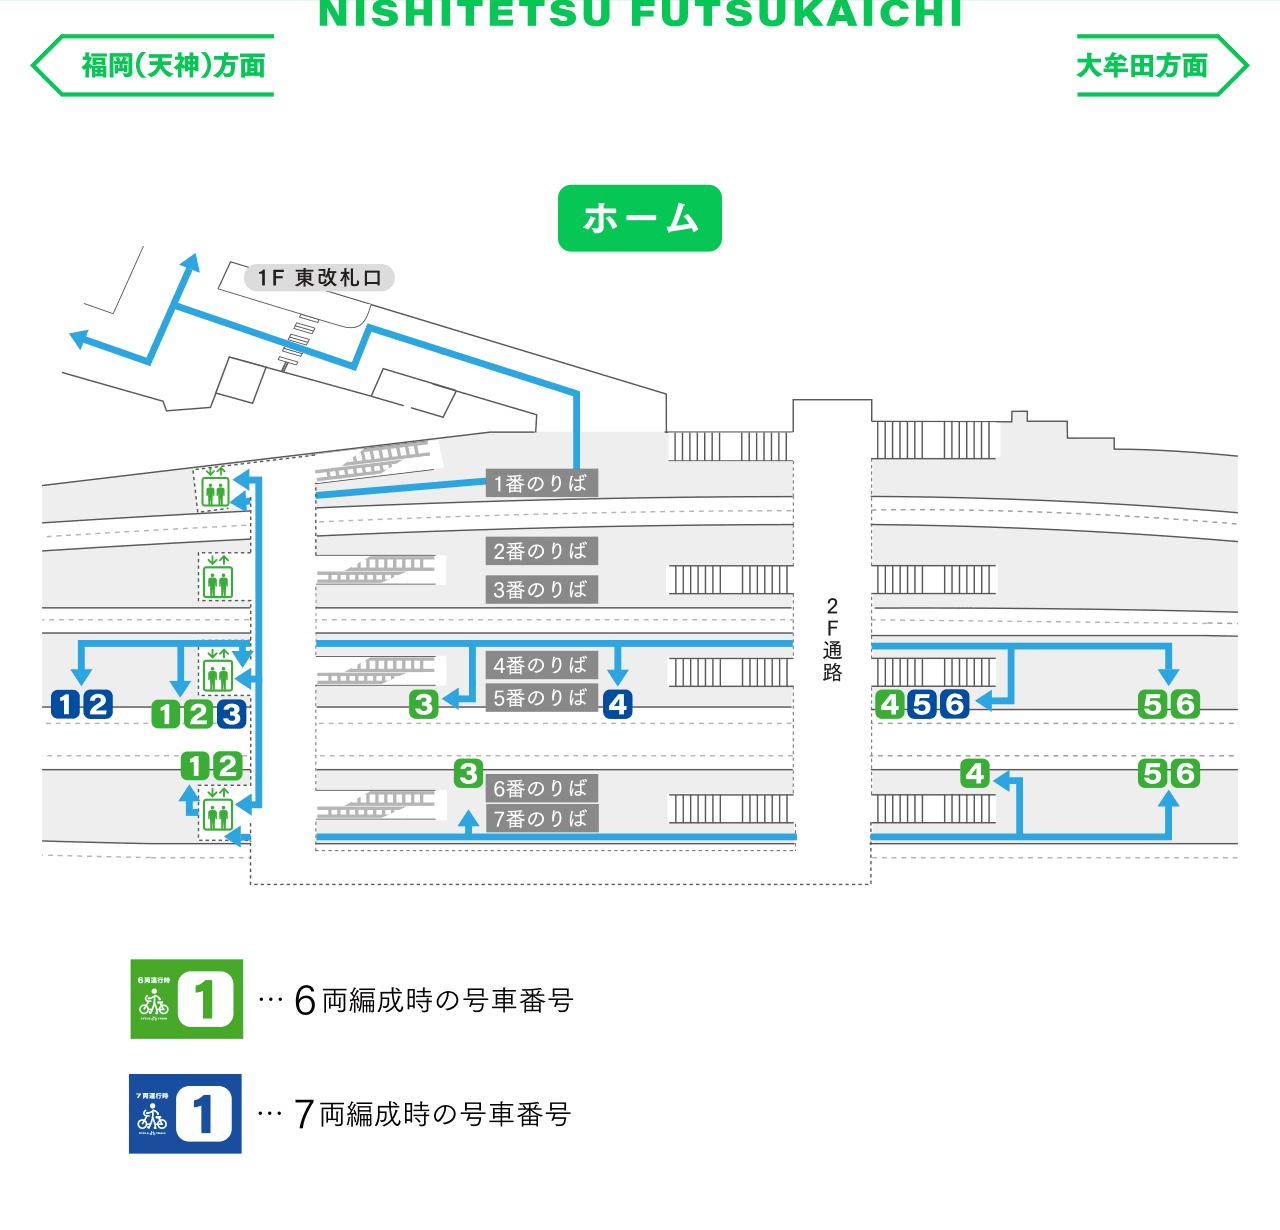 西鉄二日市駅 構内図